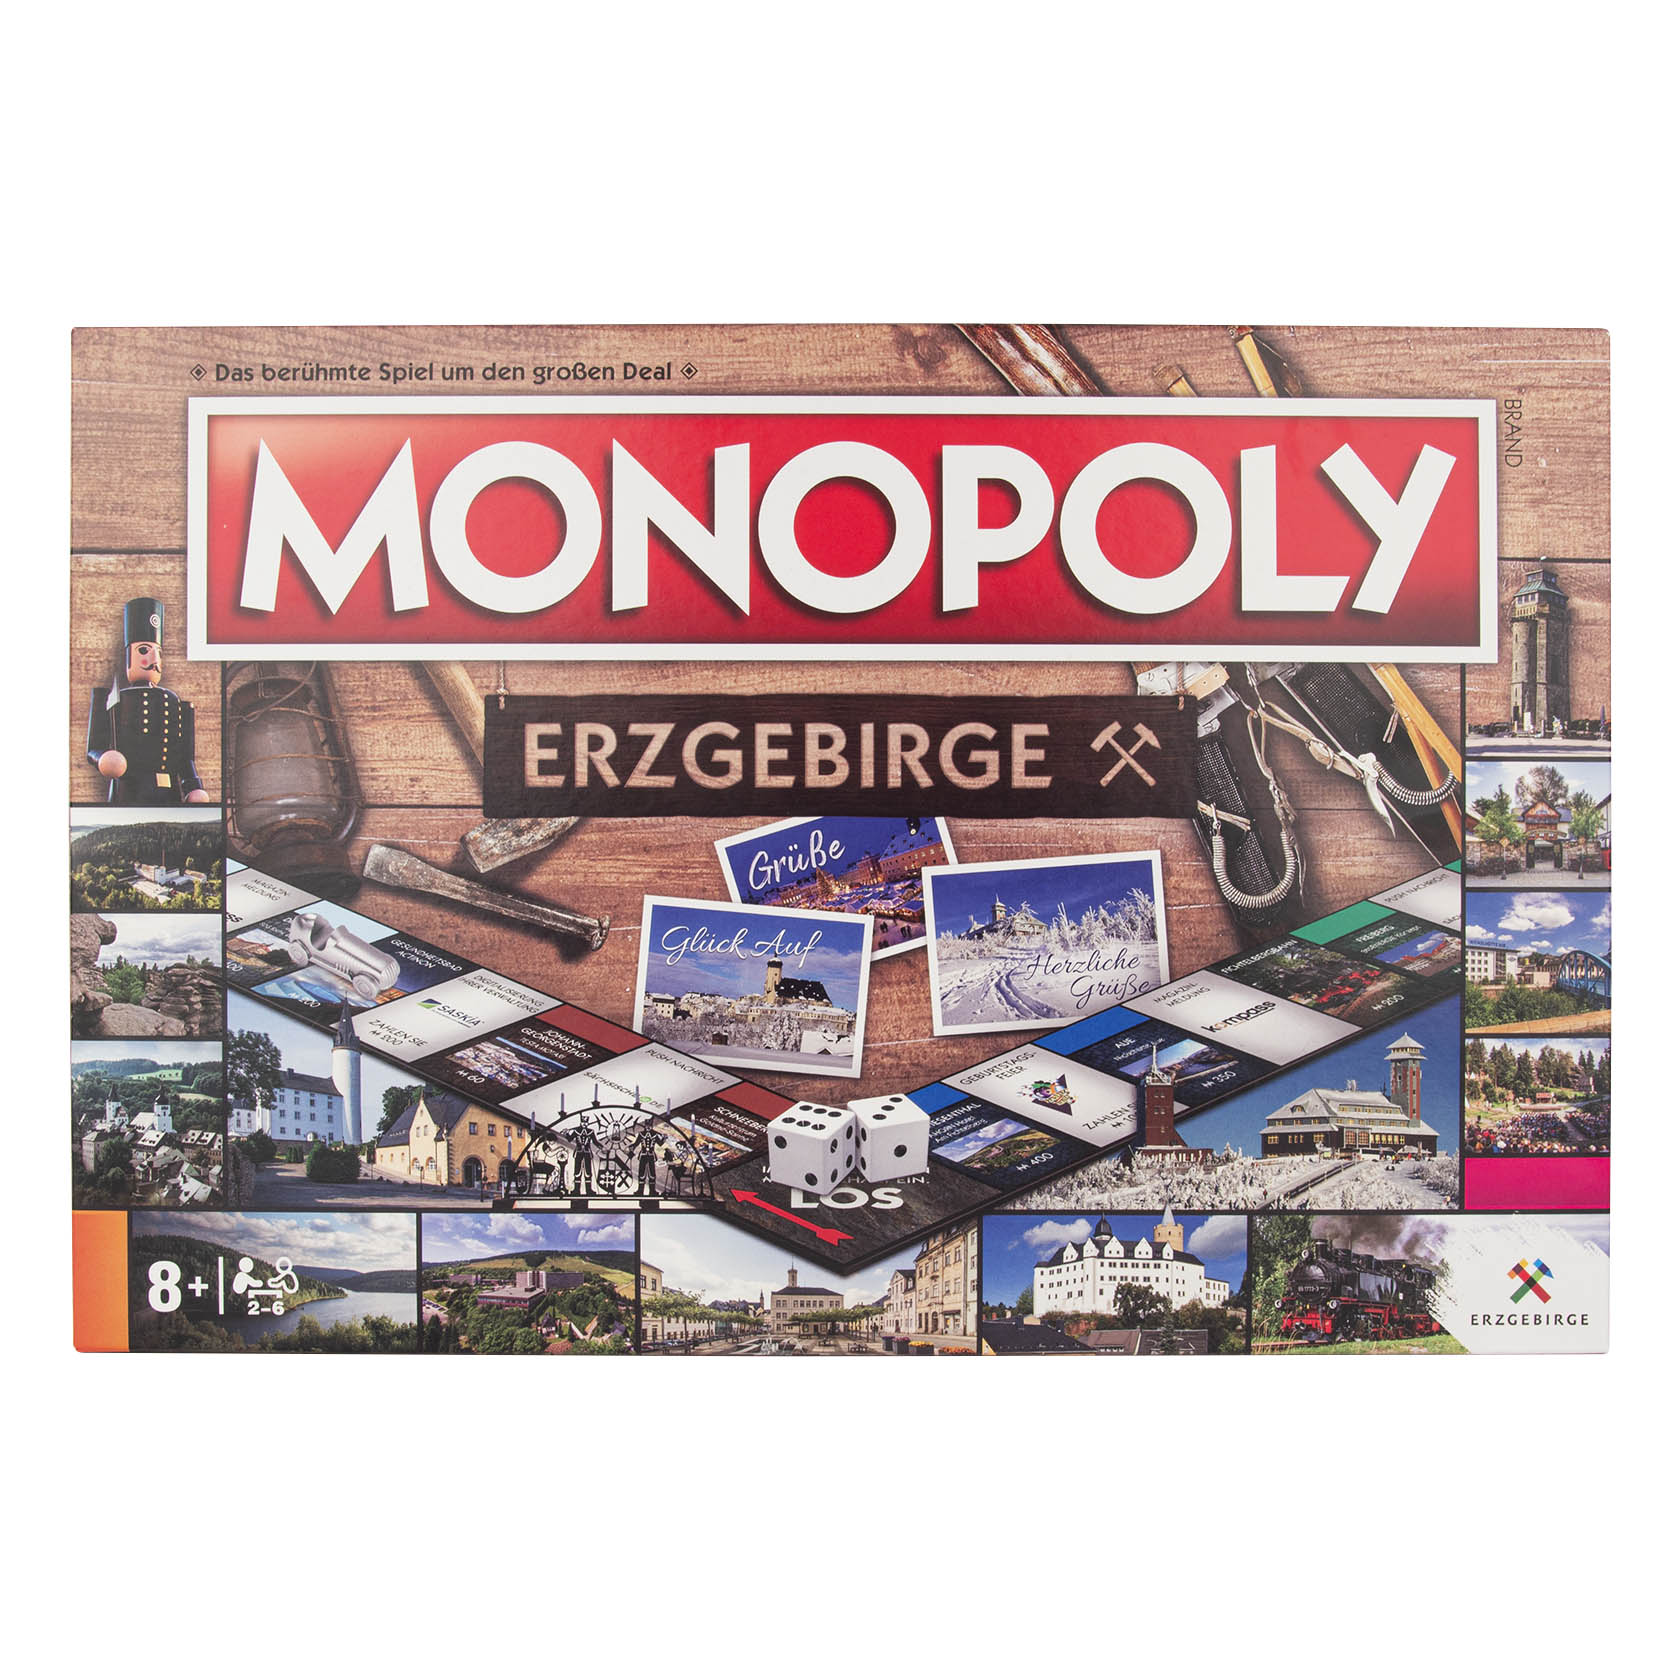 Monopoly Erzgebirge im Dregeno Online Shop günstig kaufen